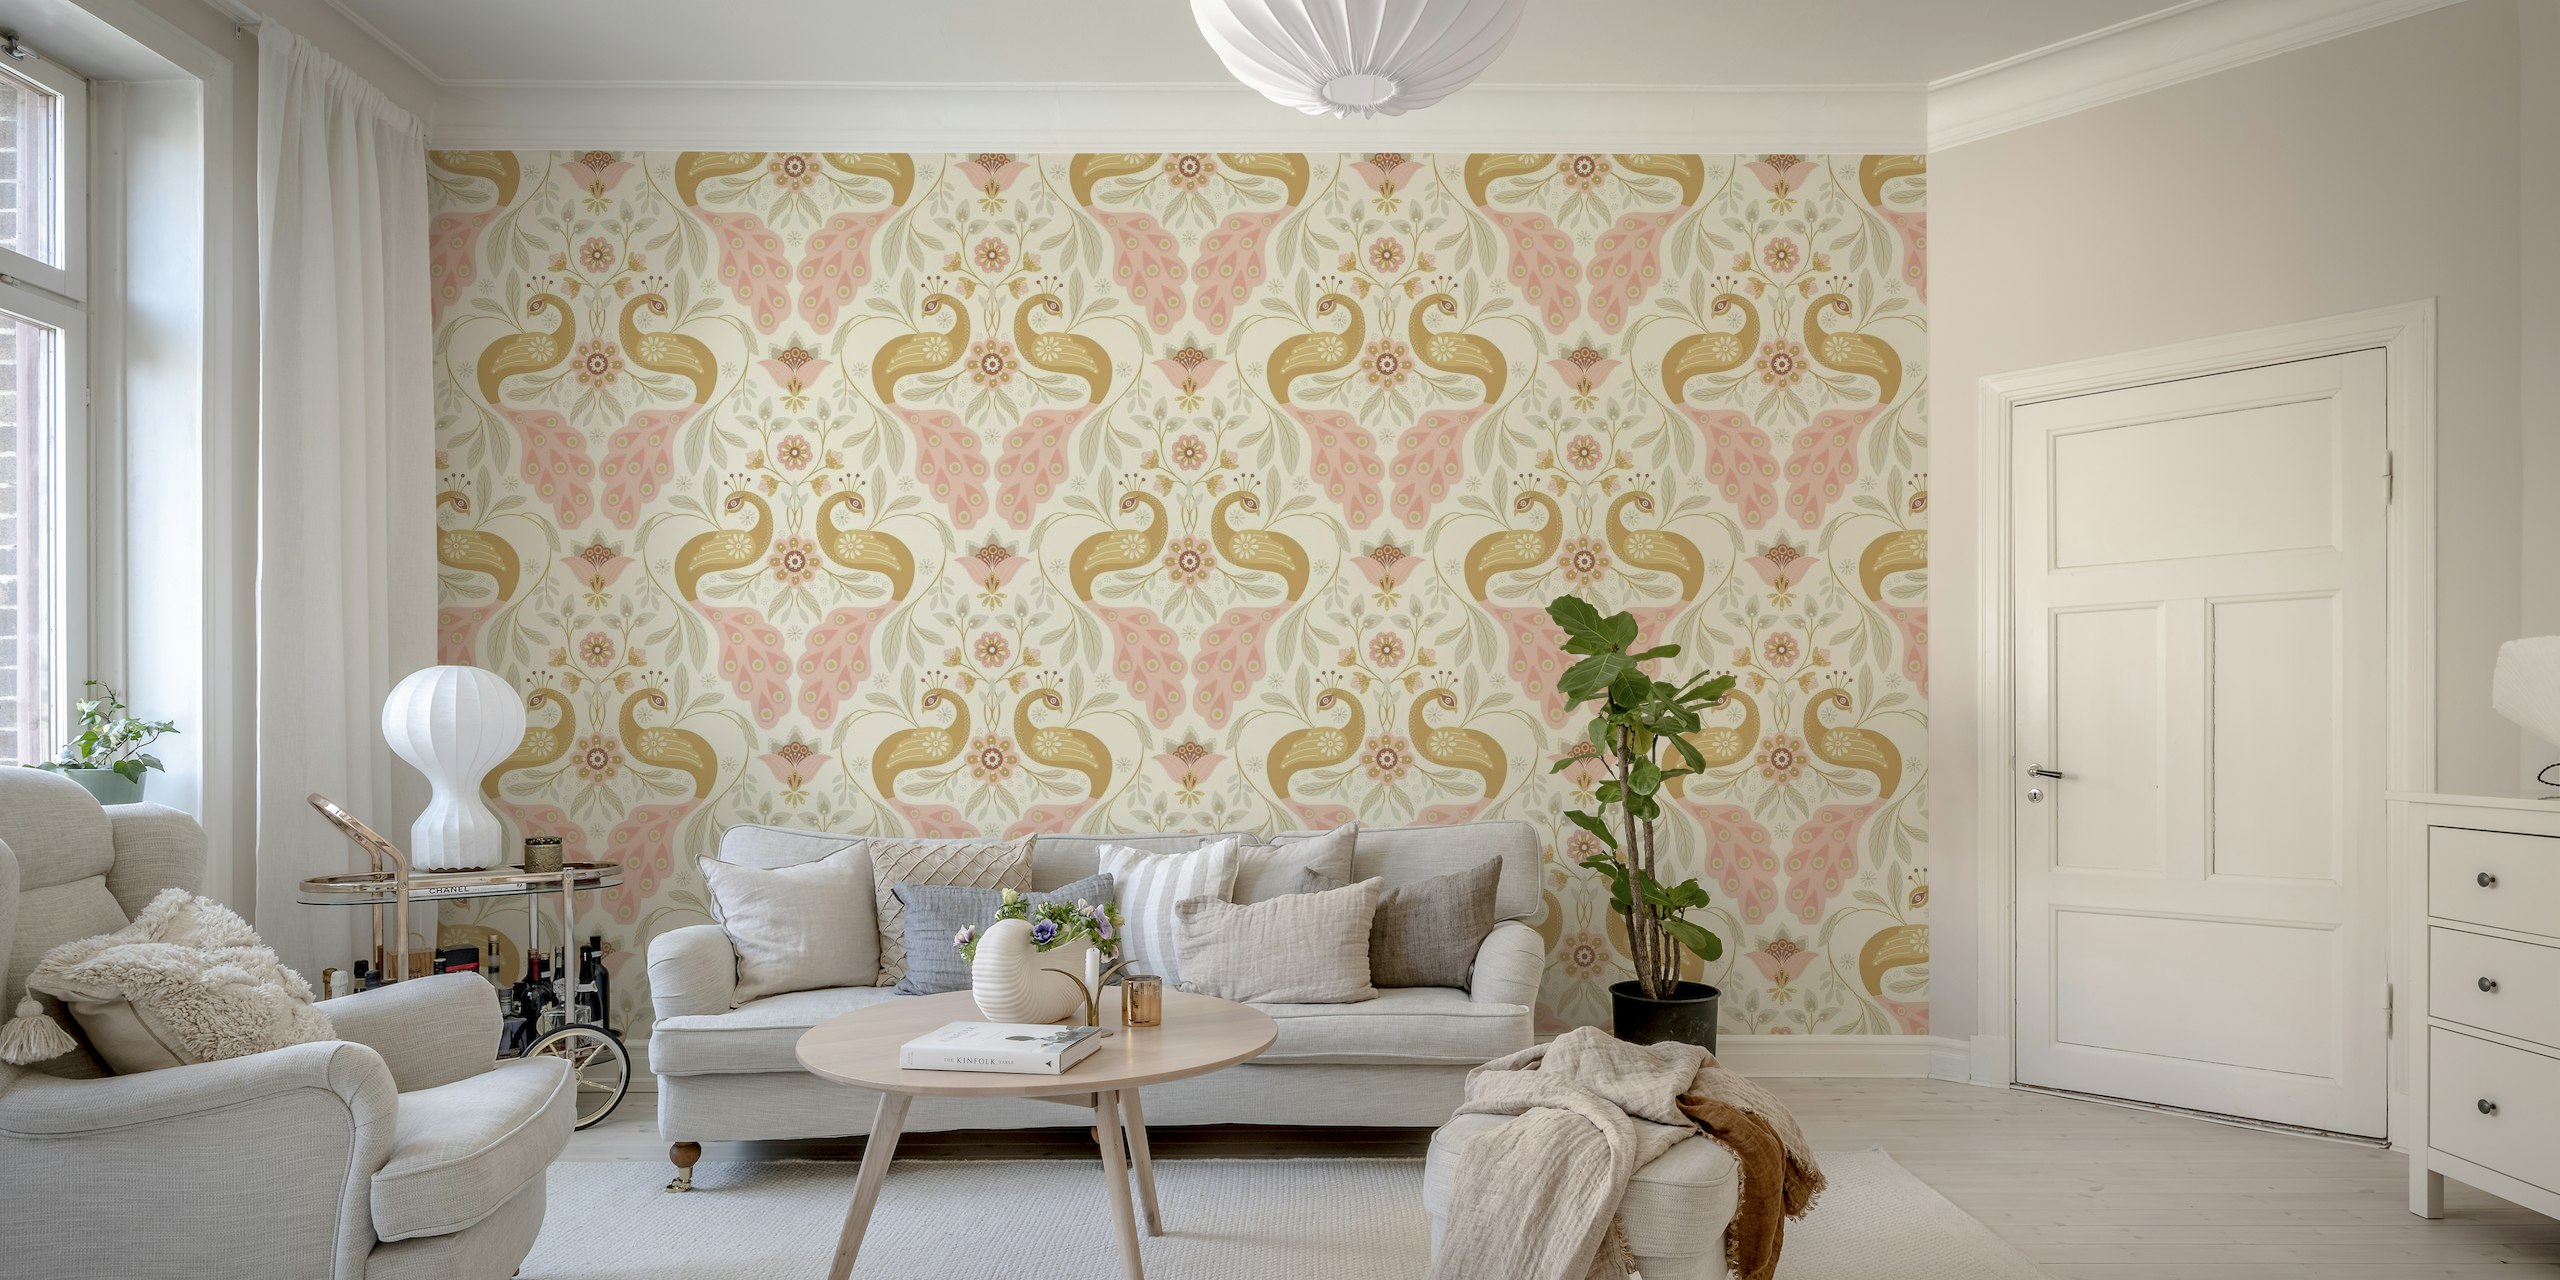 Pastell påfuglveggmaleri med elegant design for hjemmeinnredning.